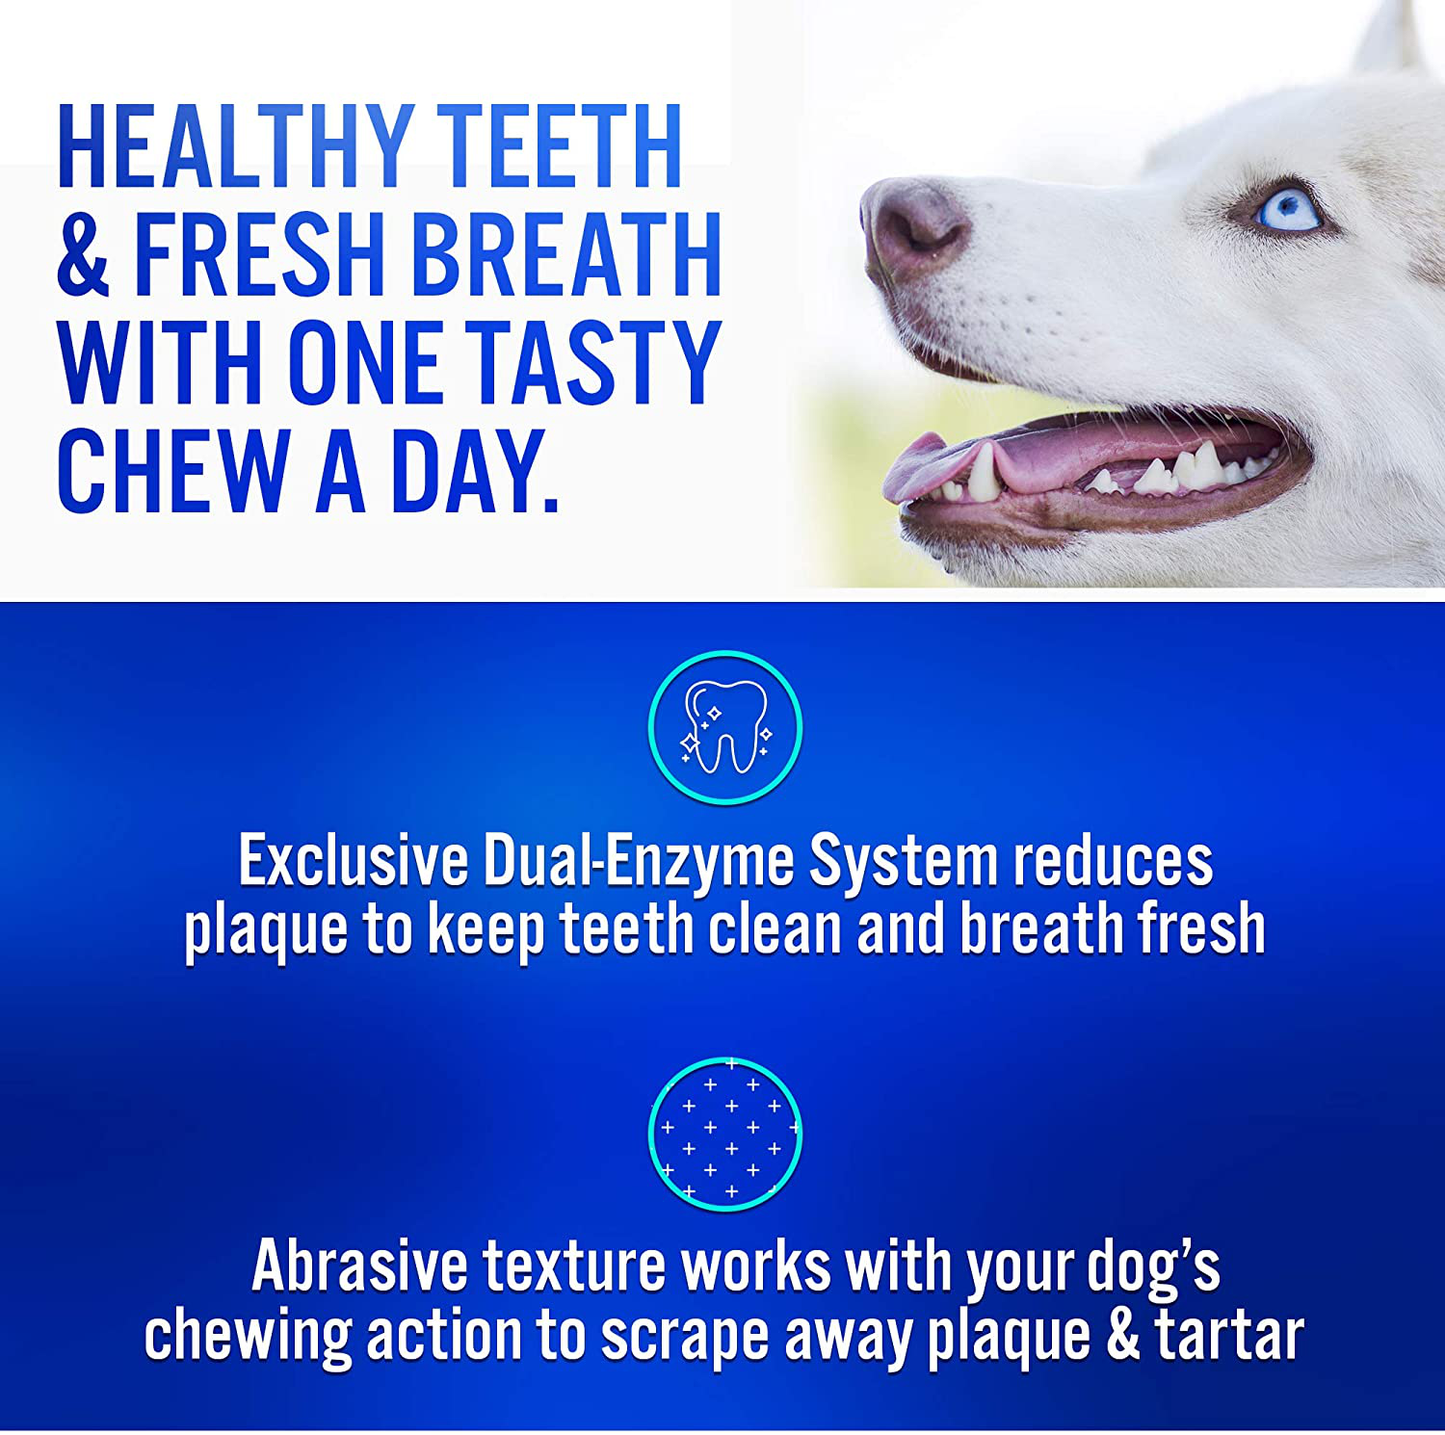 Virbac CET Enzymatic Oral Hygiene Chews for Dogs